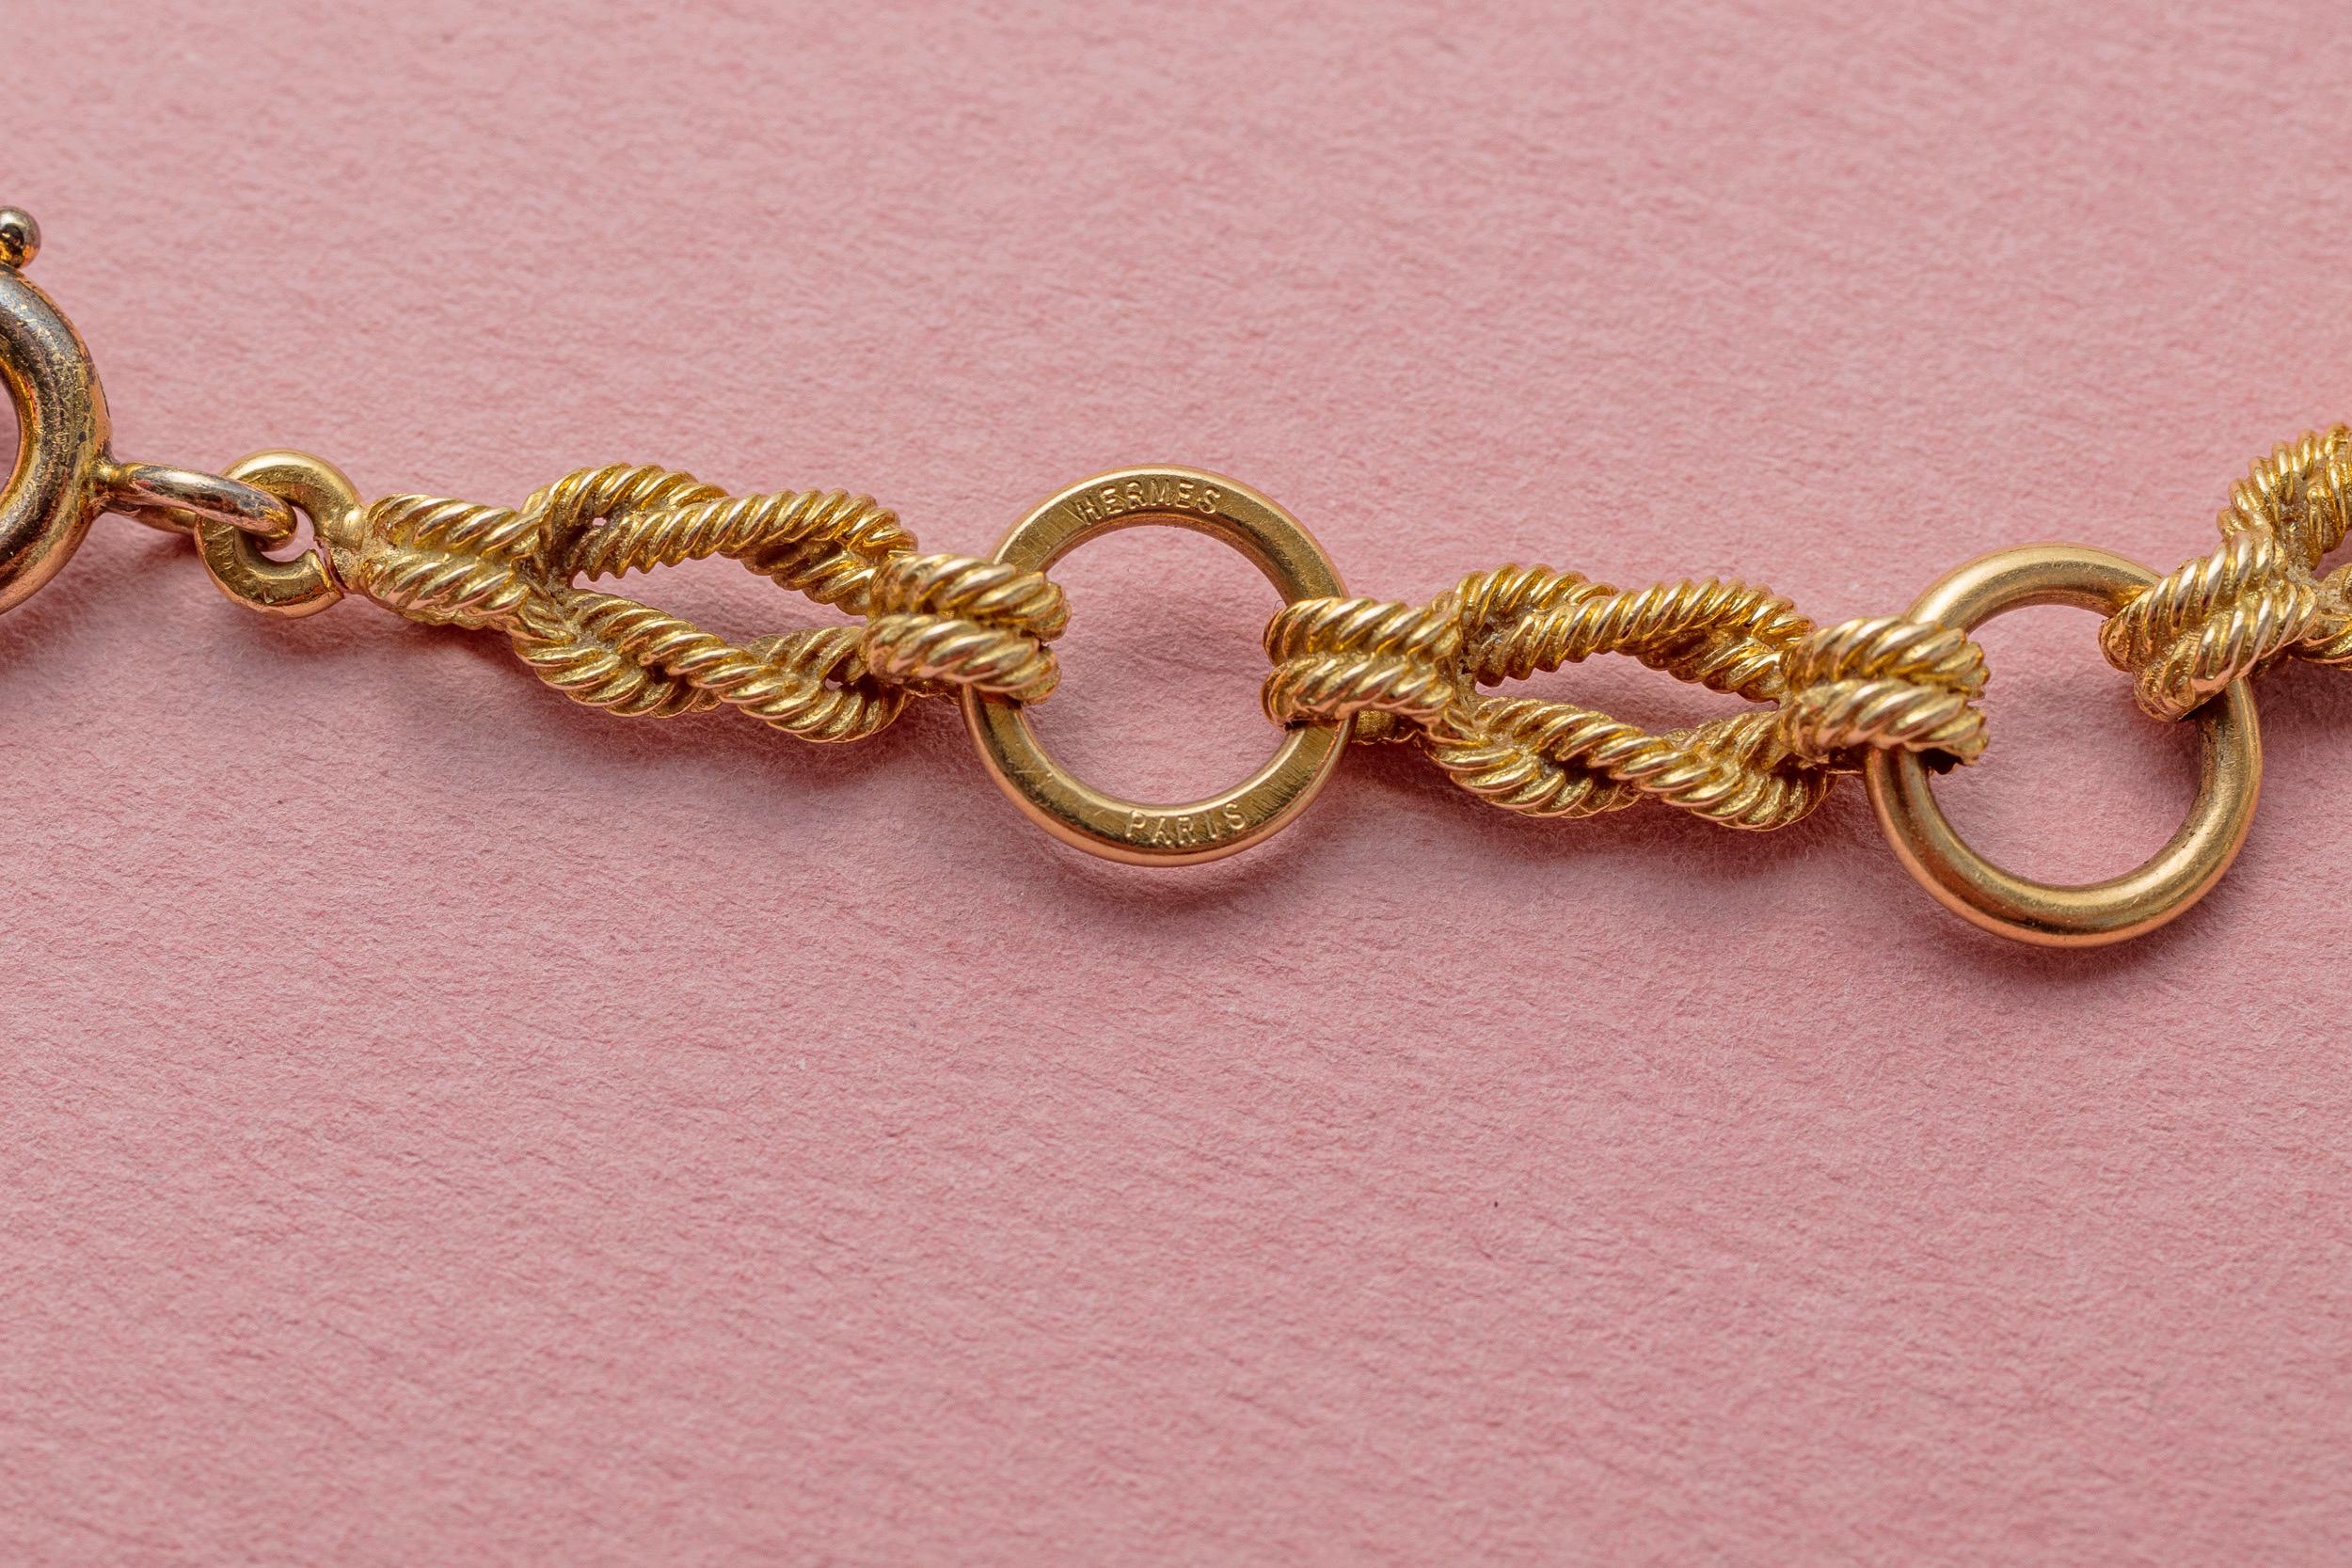 Halskette aus 18 Karat Gelbgold mit Gliedern aus flachen Knoten, die mit Goldseilen verbunden sind und sich mit runden Gliedern abwechseln, französische Meistermarke: für Pierre Lefebvre, signiert und nummeriert: Hermès Paris, französisch, um